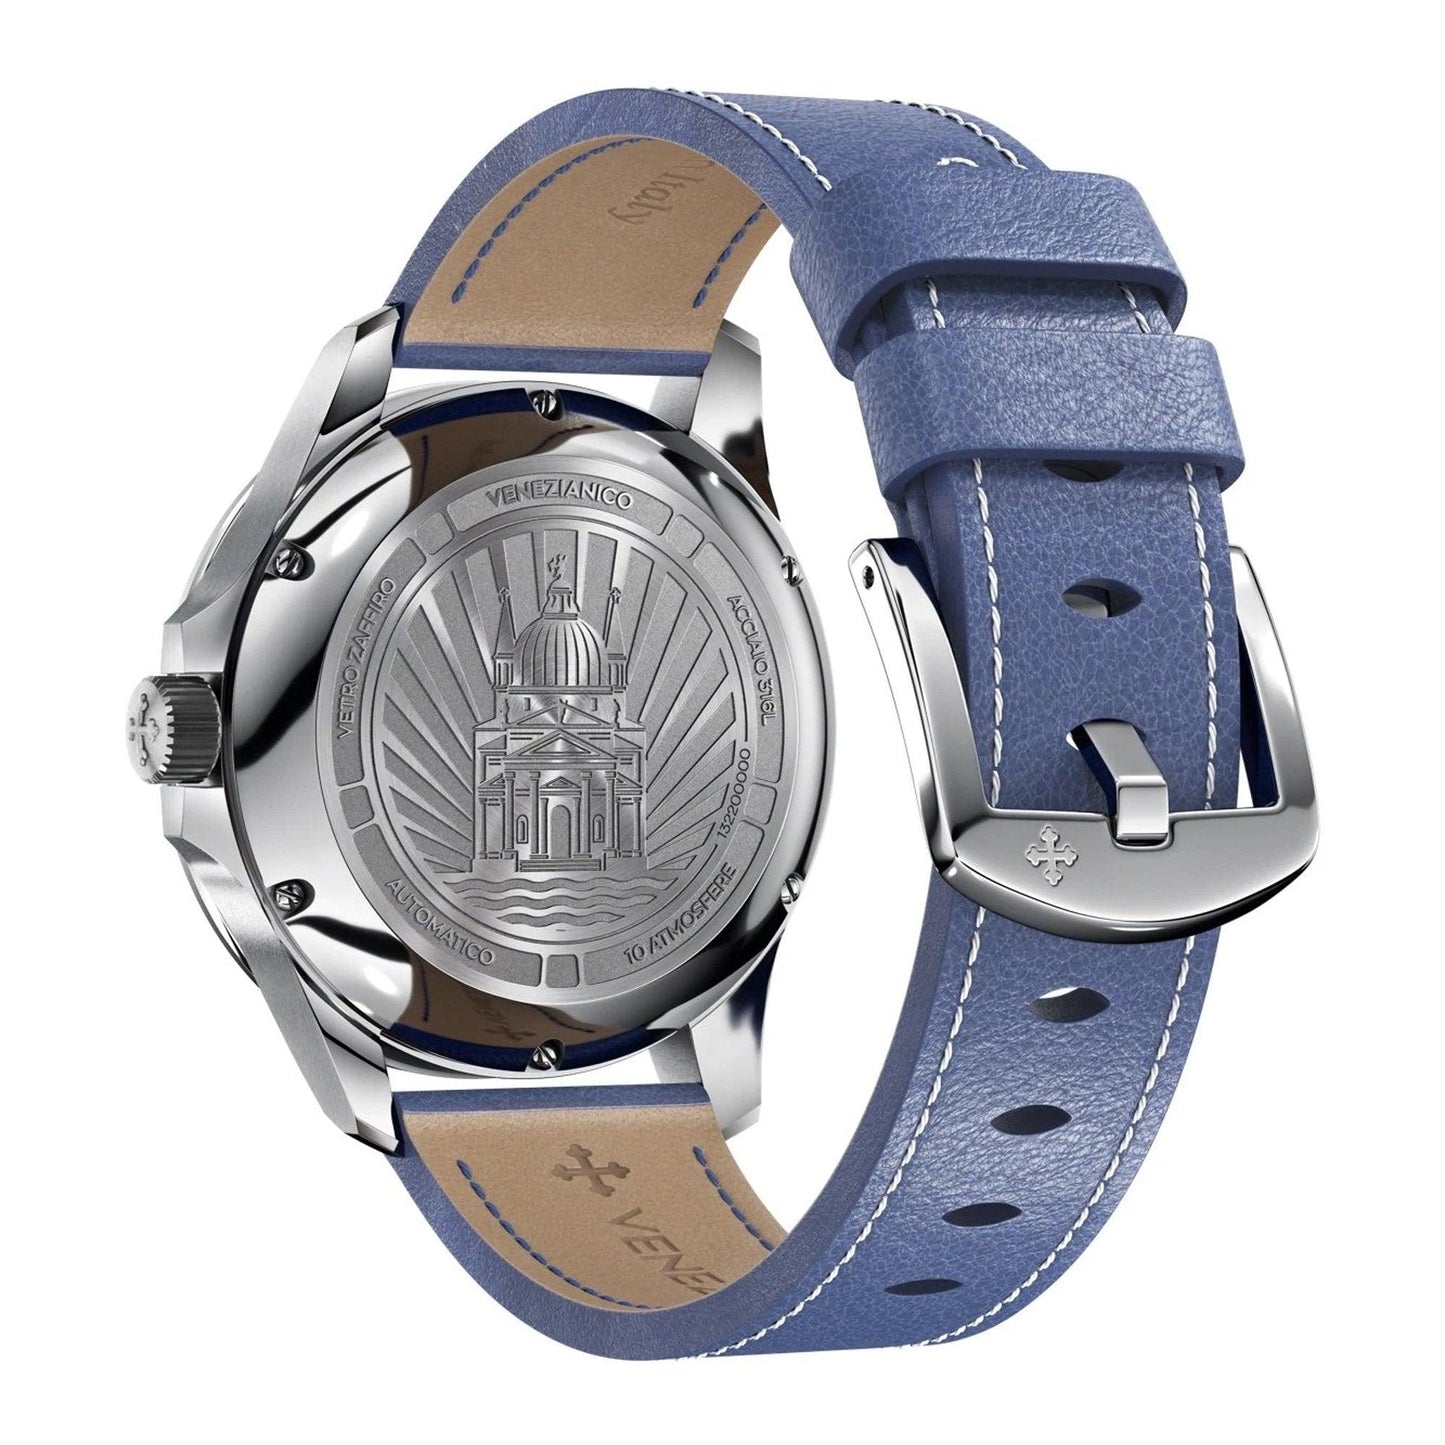 Venezianico Redentore 1321502 orologio uomo meccanico - Kechiq Concept Boutique